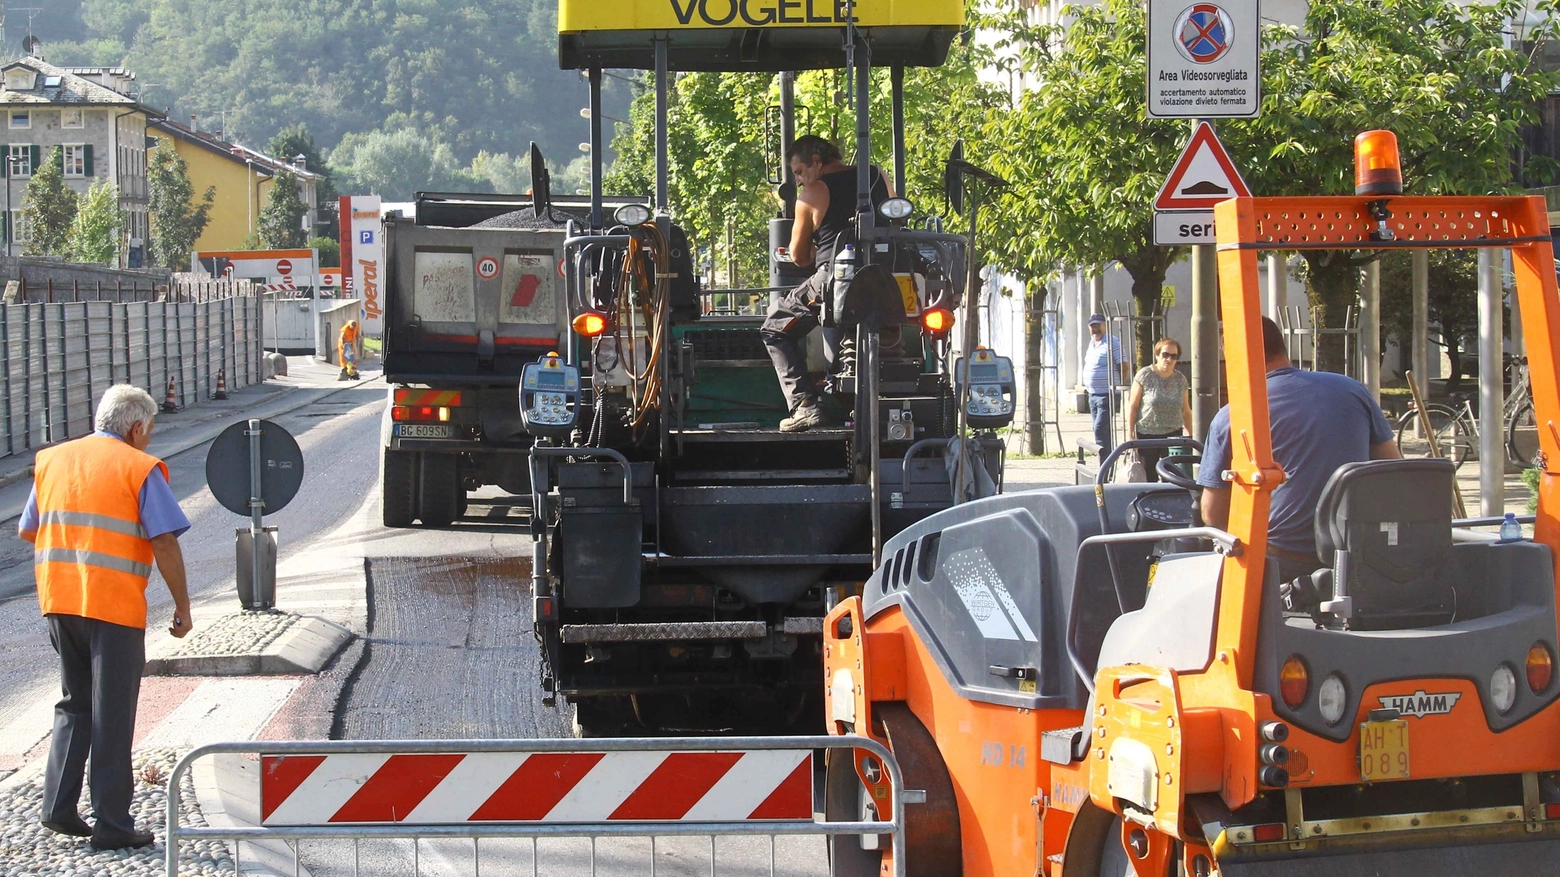 Lavori di asfaltatura in corso (foto Orlandi)